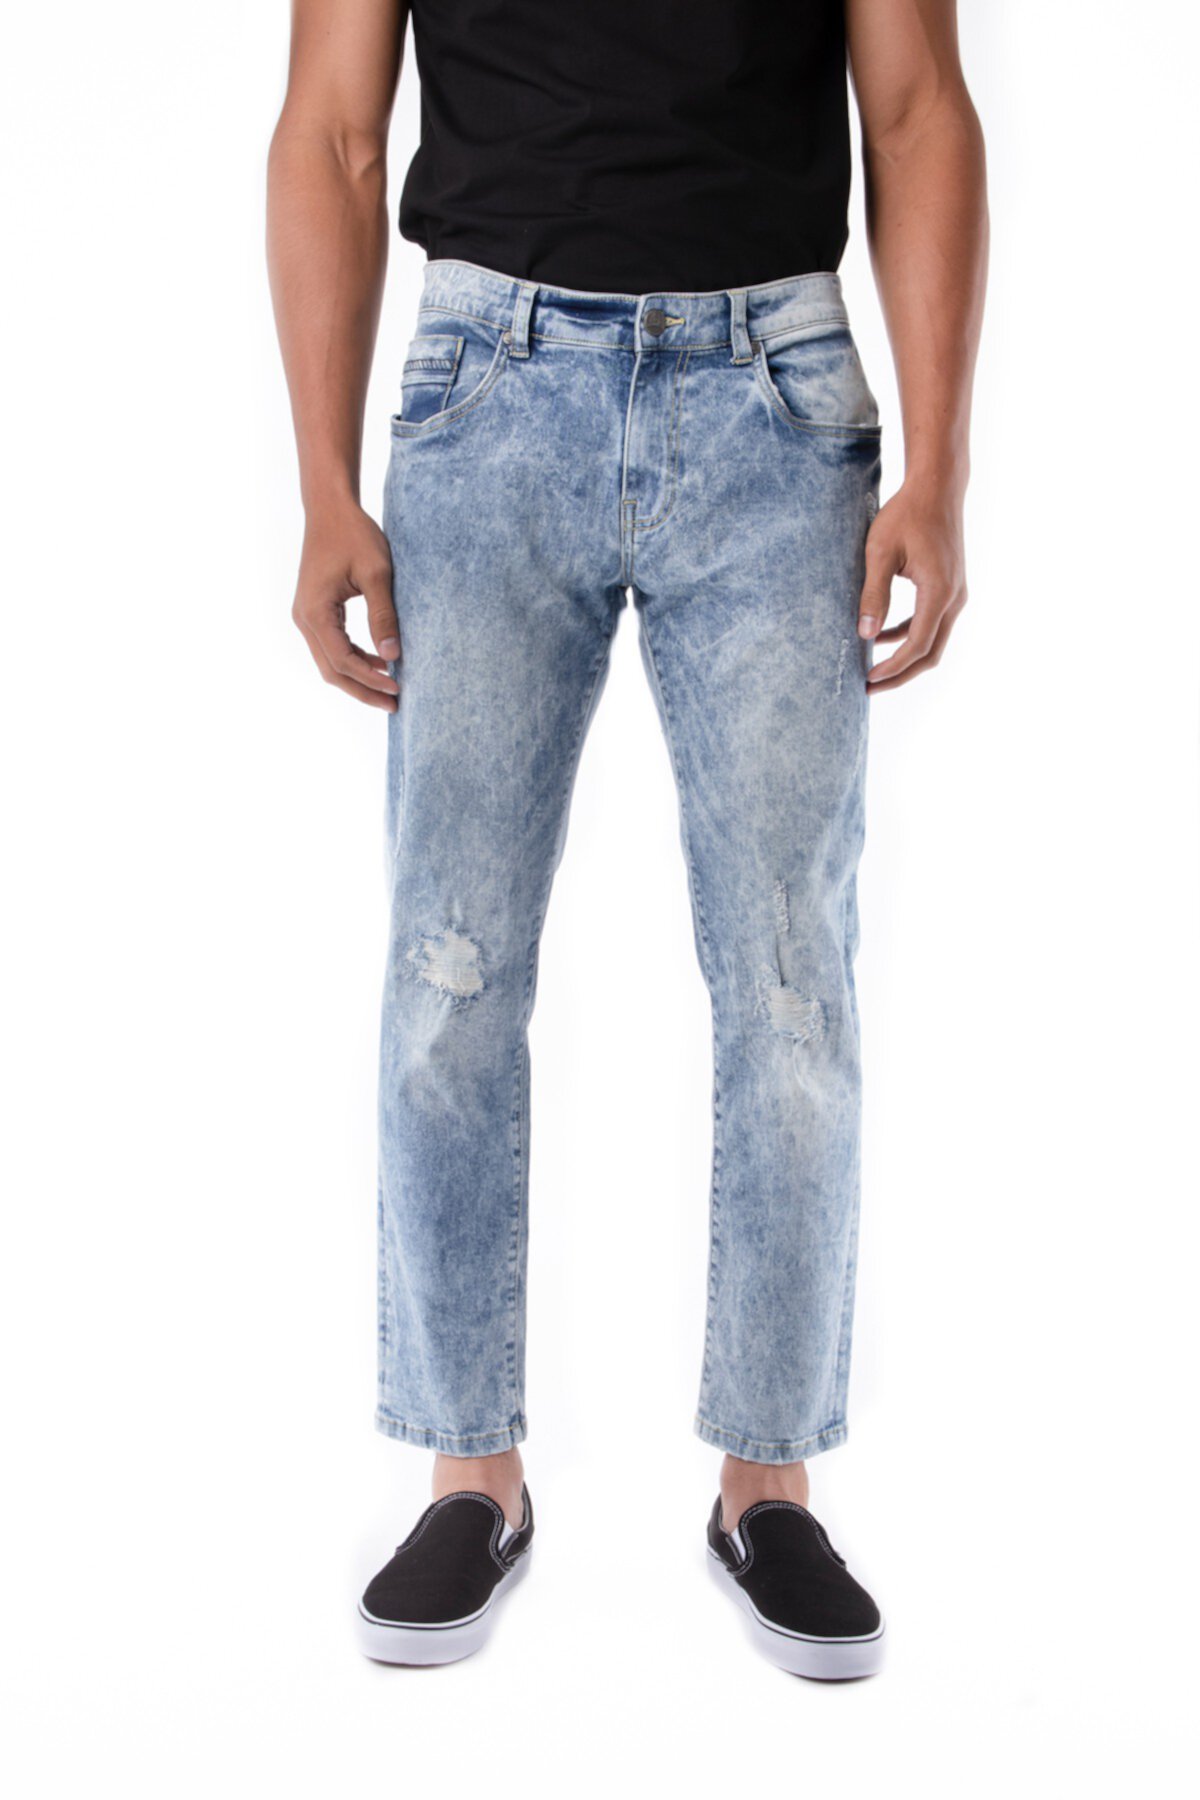 Рваные джинсы скинни - внутренний шов 30–32 дюйма XRAY